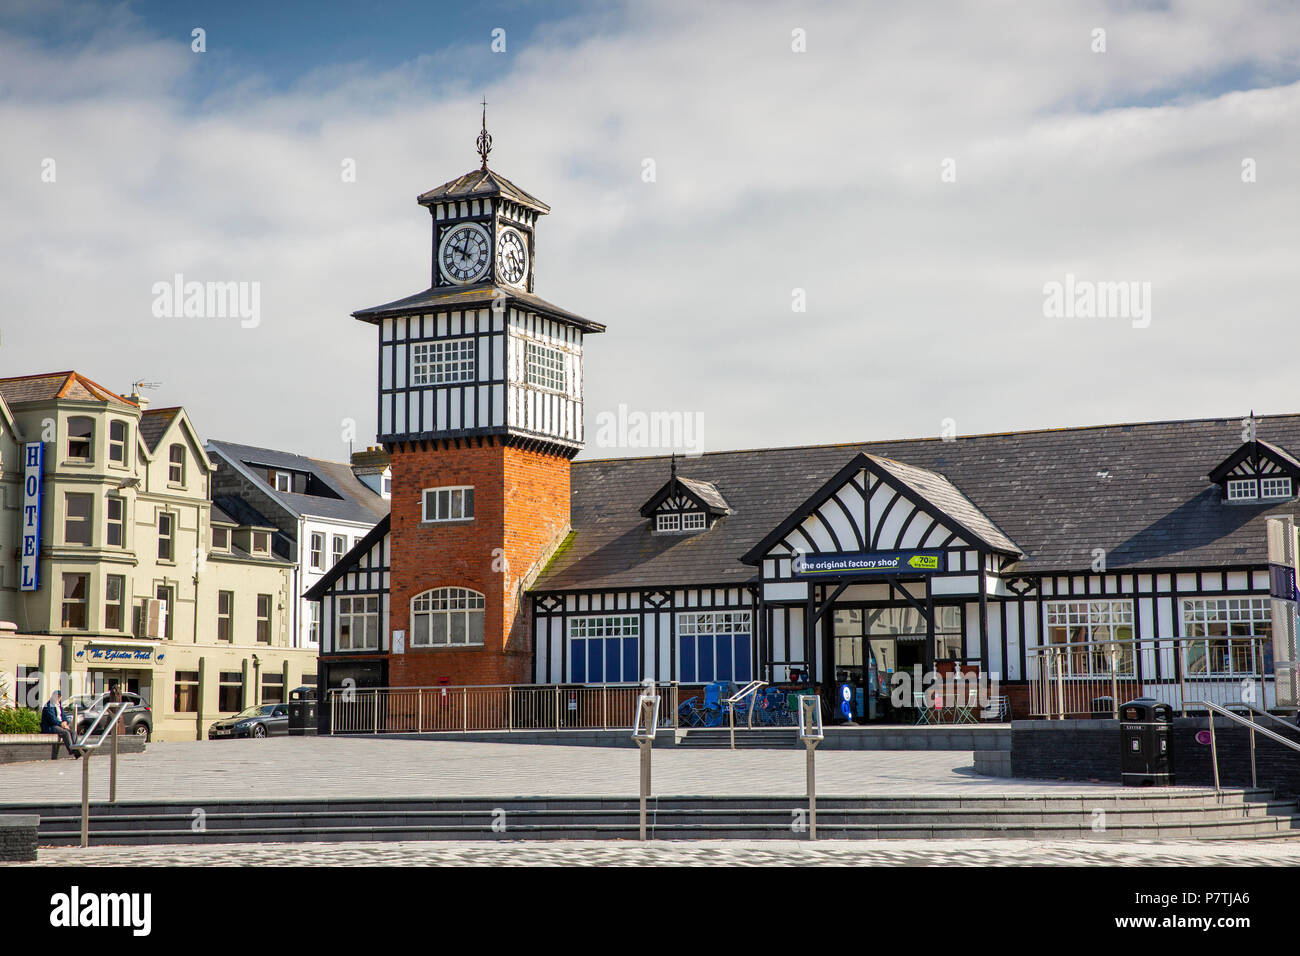 Großbritannien, Nordirland, Co Antrim, Portrush, Kerr Street, Fachwerkhaus Glockenturm der alten Bahnhof, jetzt die ursprünglichen Werkseinstellungen laden Stockfoto